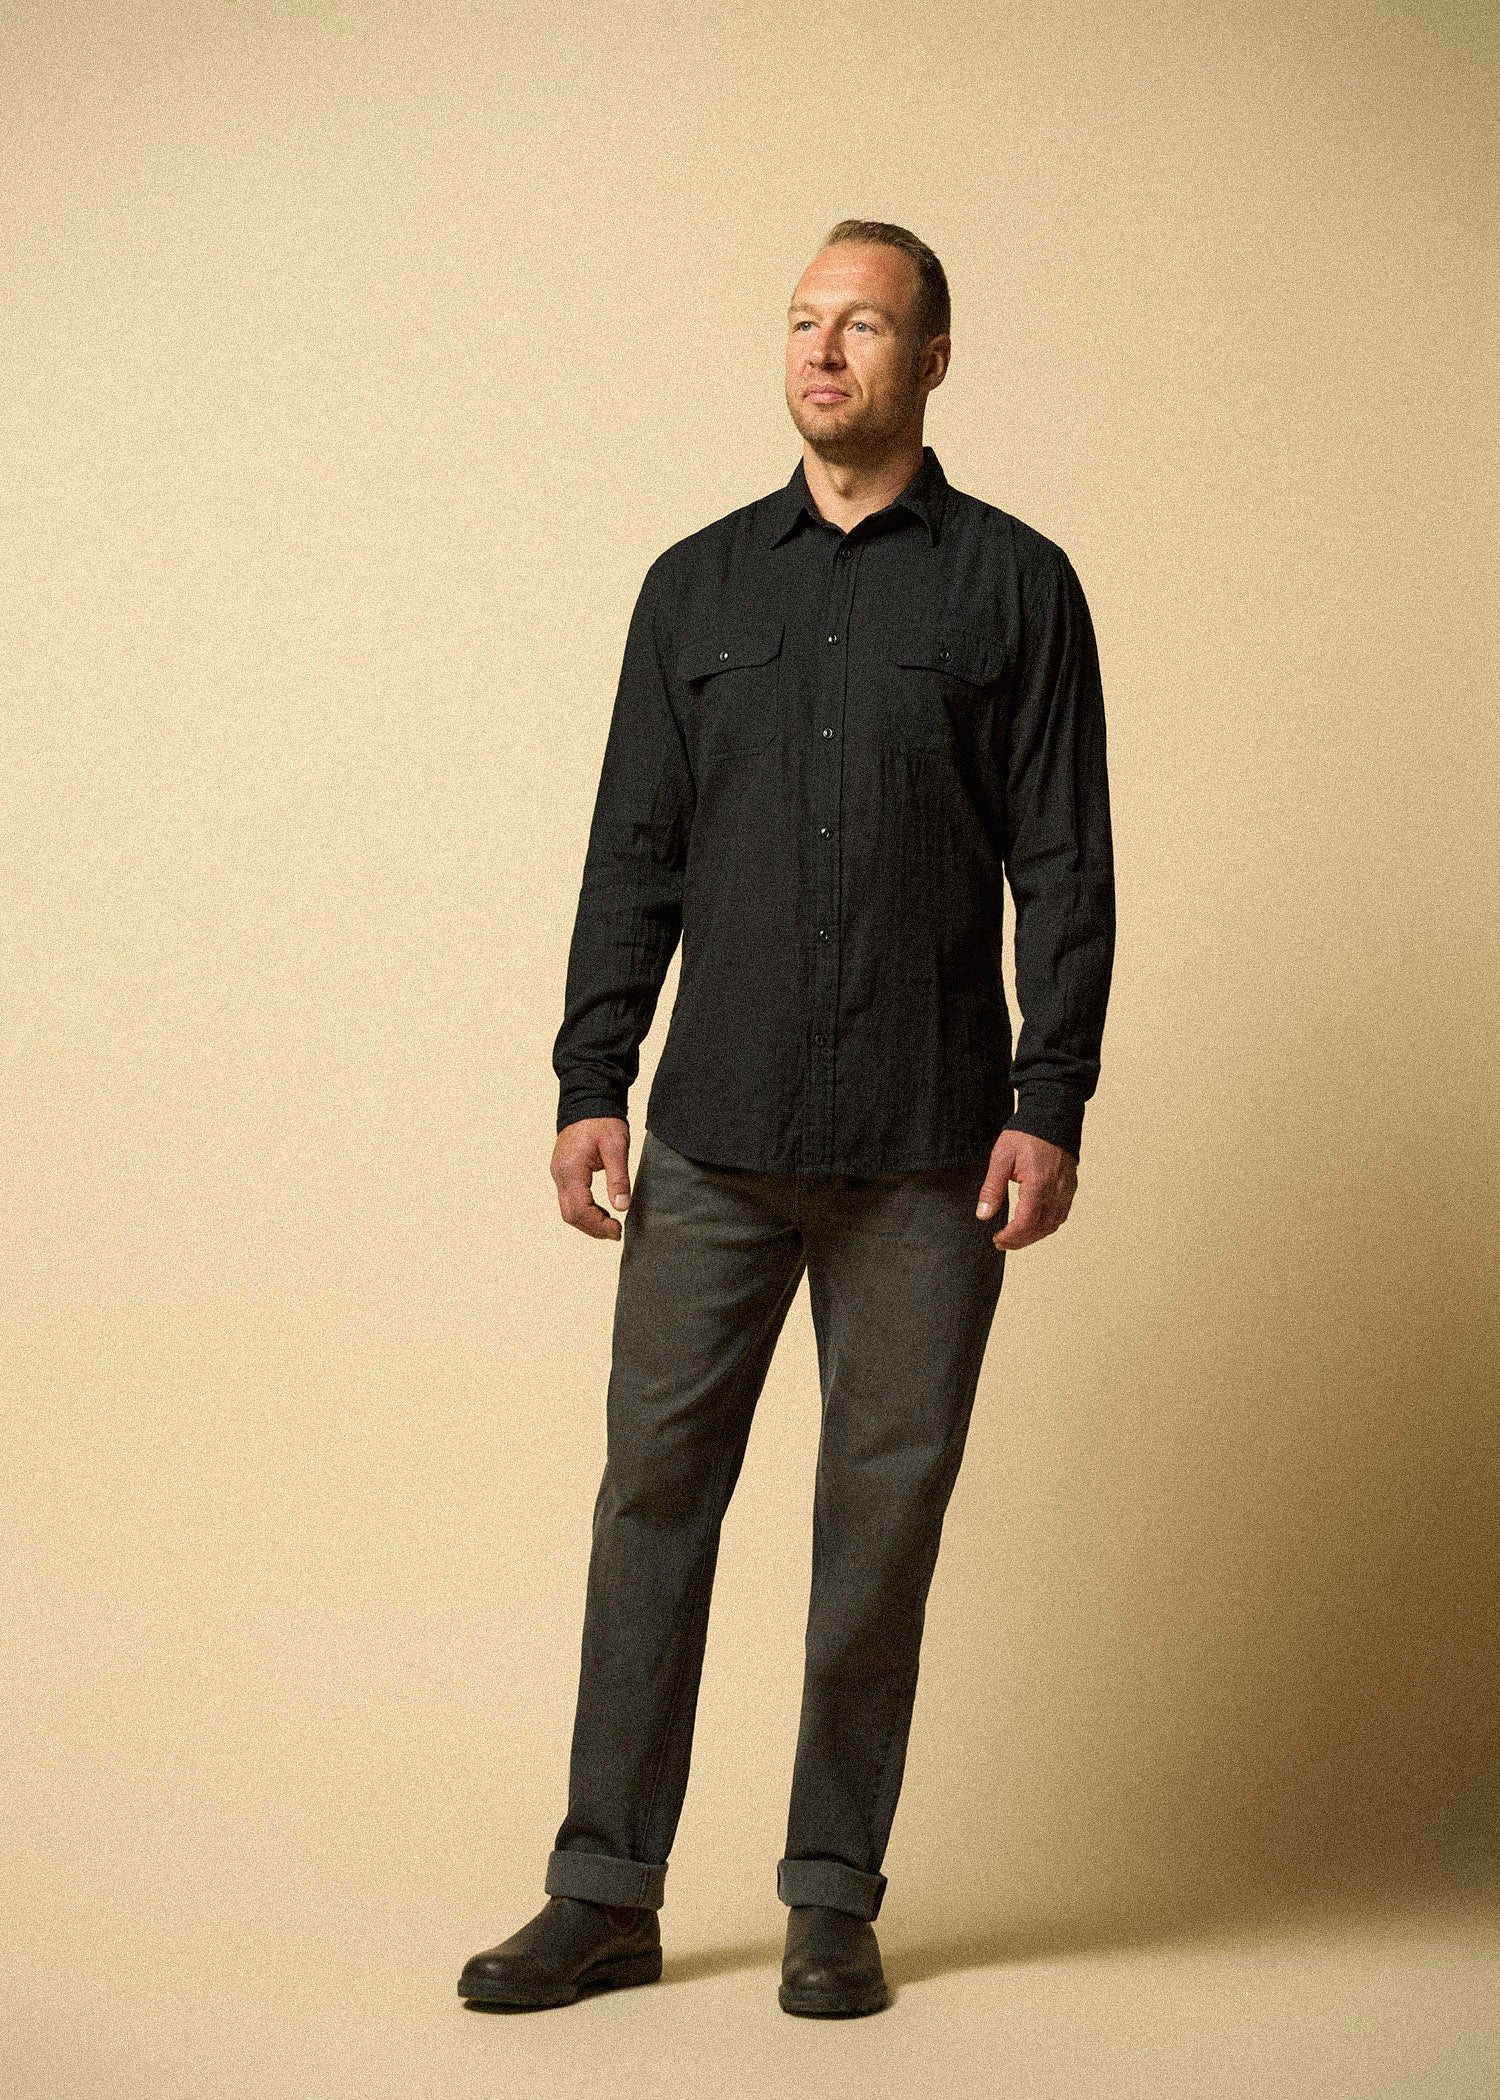 LJ-Men-Double-Weave-Shirt-Vintage-Black-full